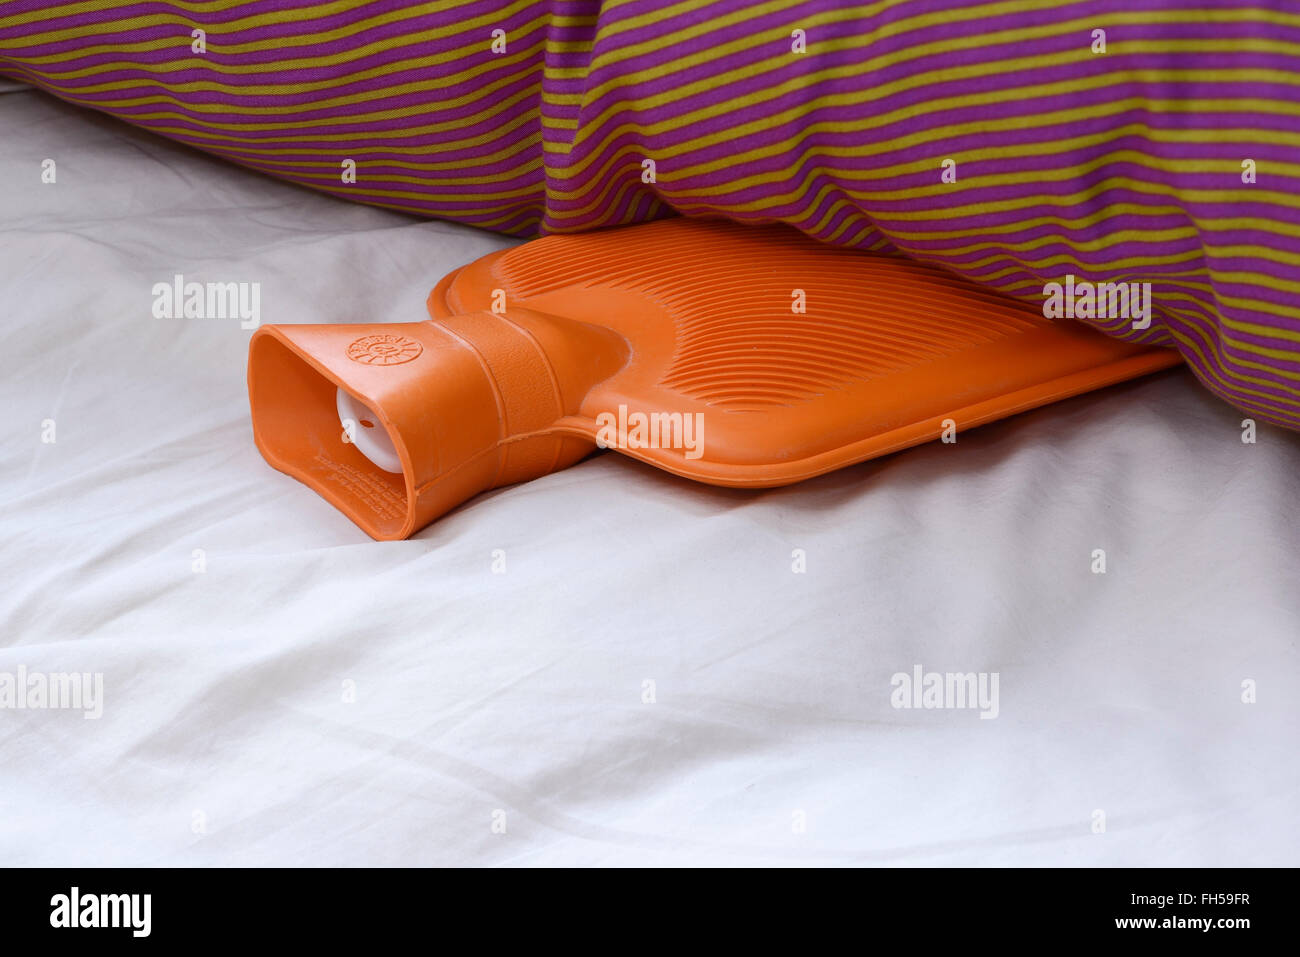 Eine orange Gummi-Wärmflasche in einem Bett liegend Stockfoto